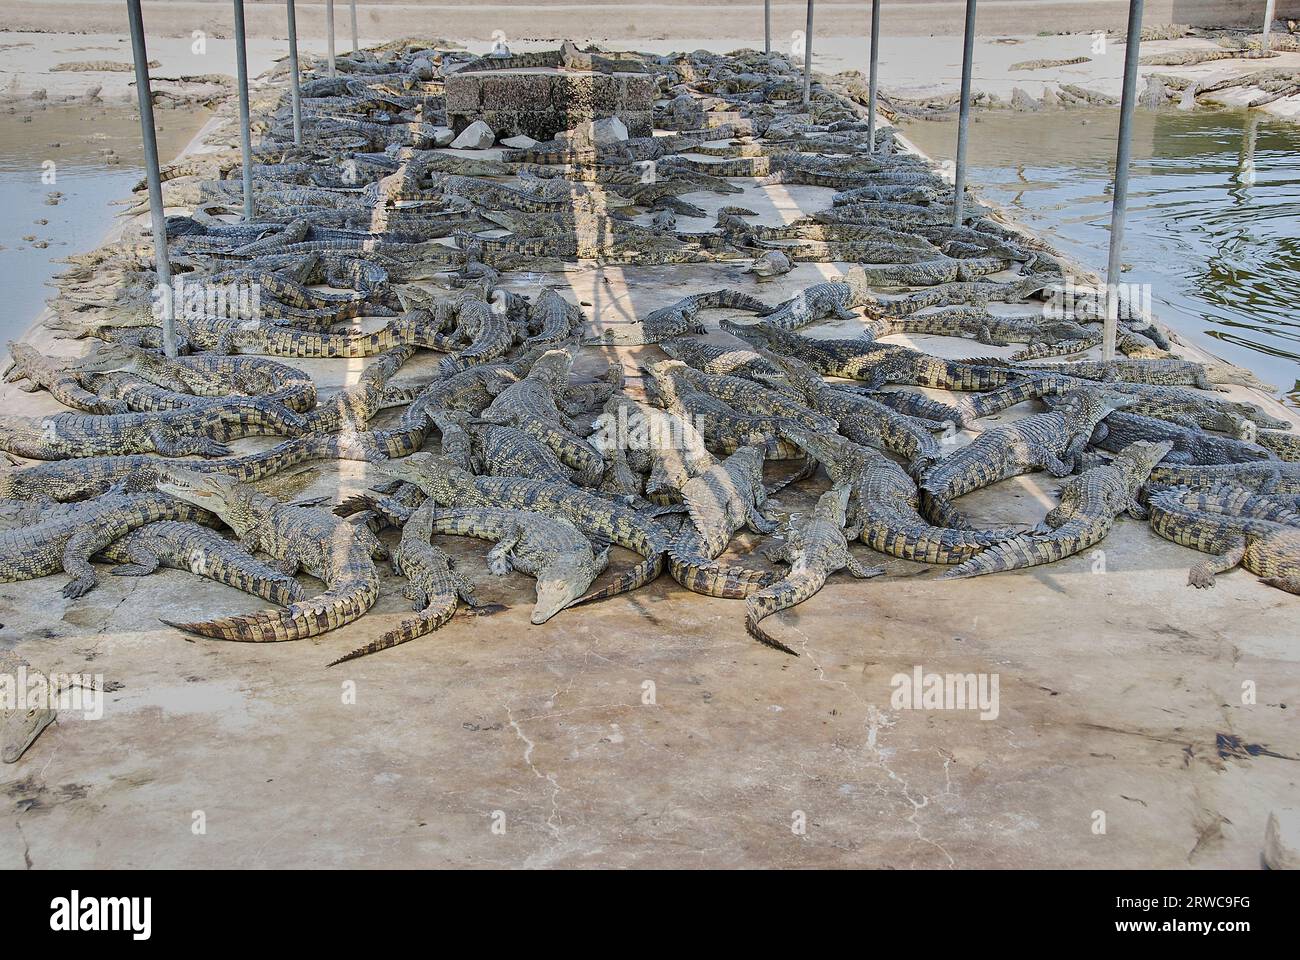 Feeding crocodiles on a crocodile farm. Crocodiles in the pond